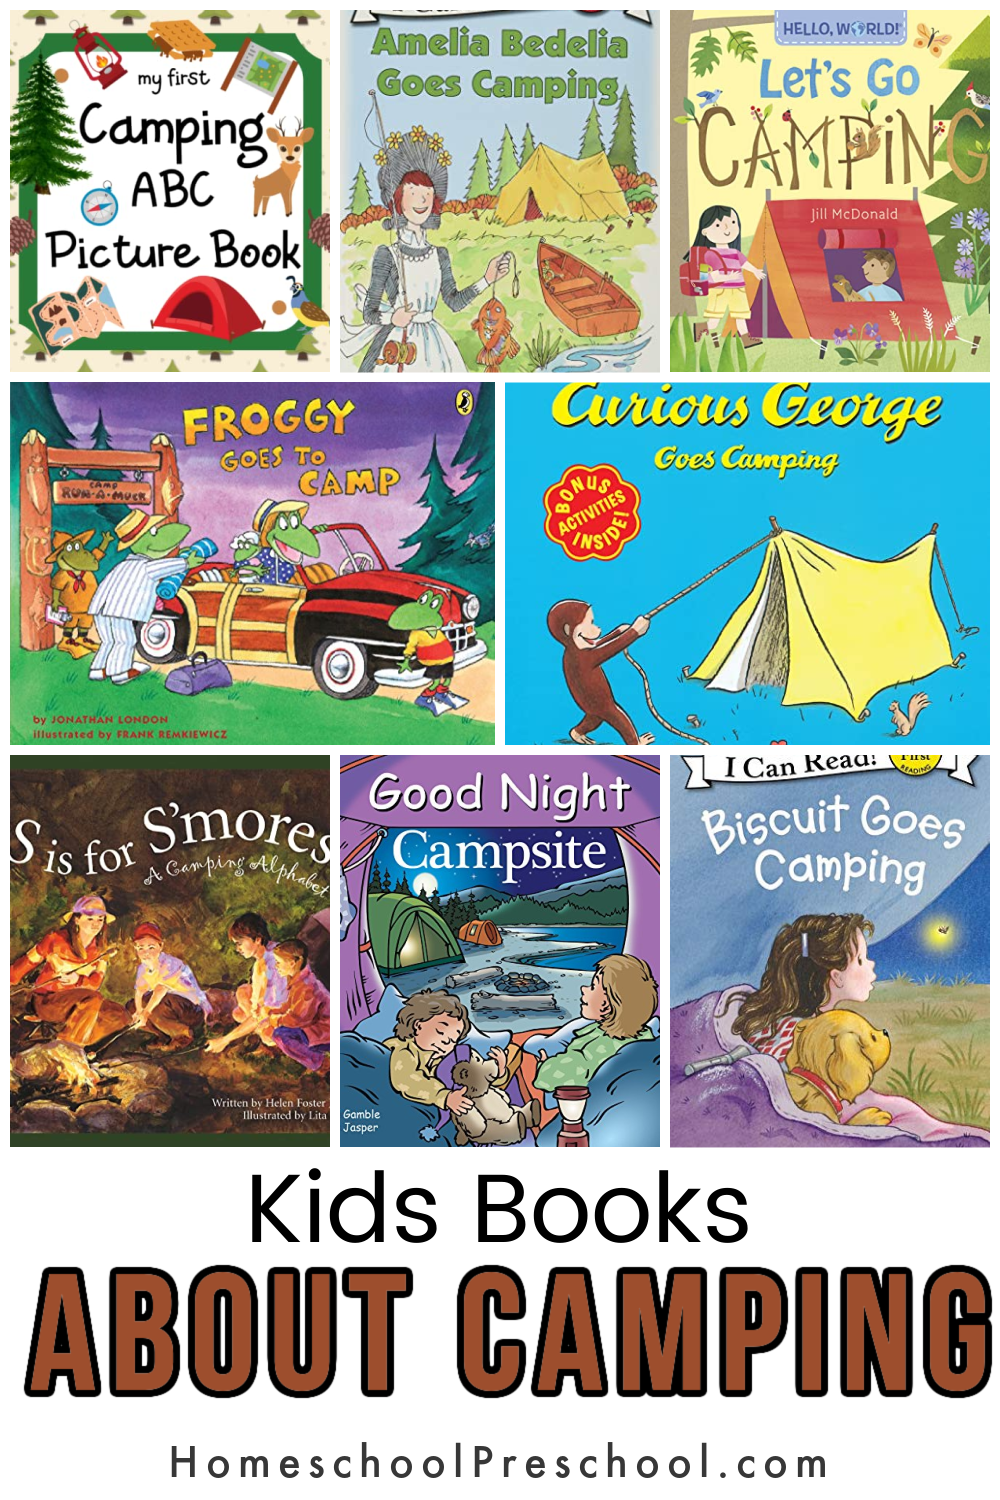 Kids-Books-About-Camping-1 Kids Books About Camping